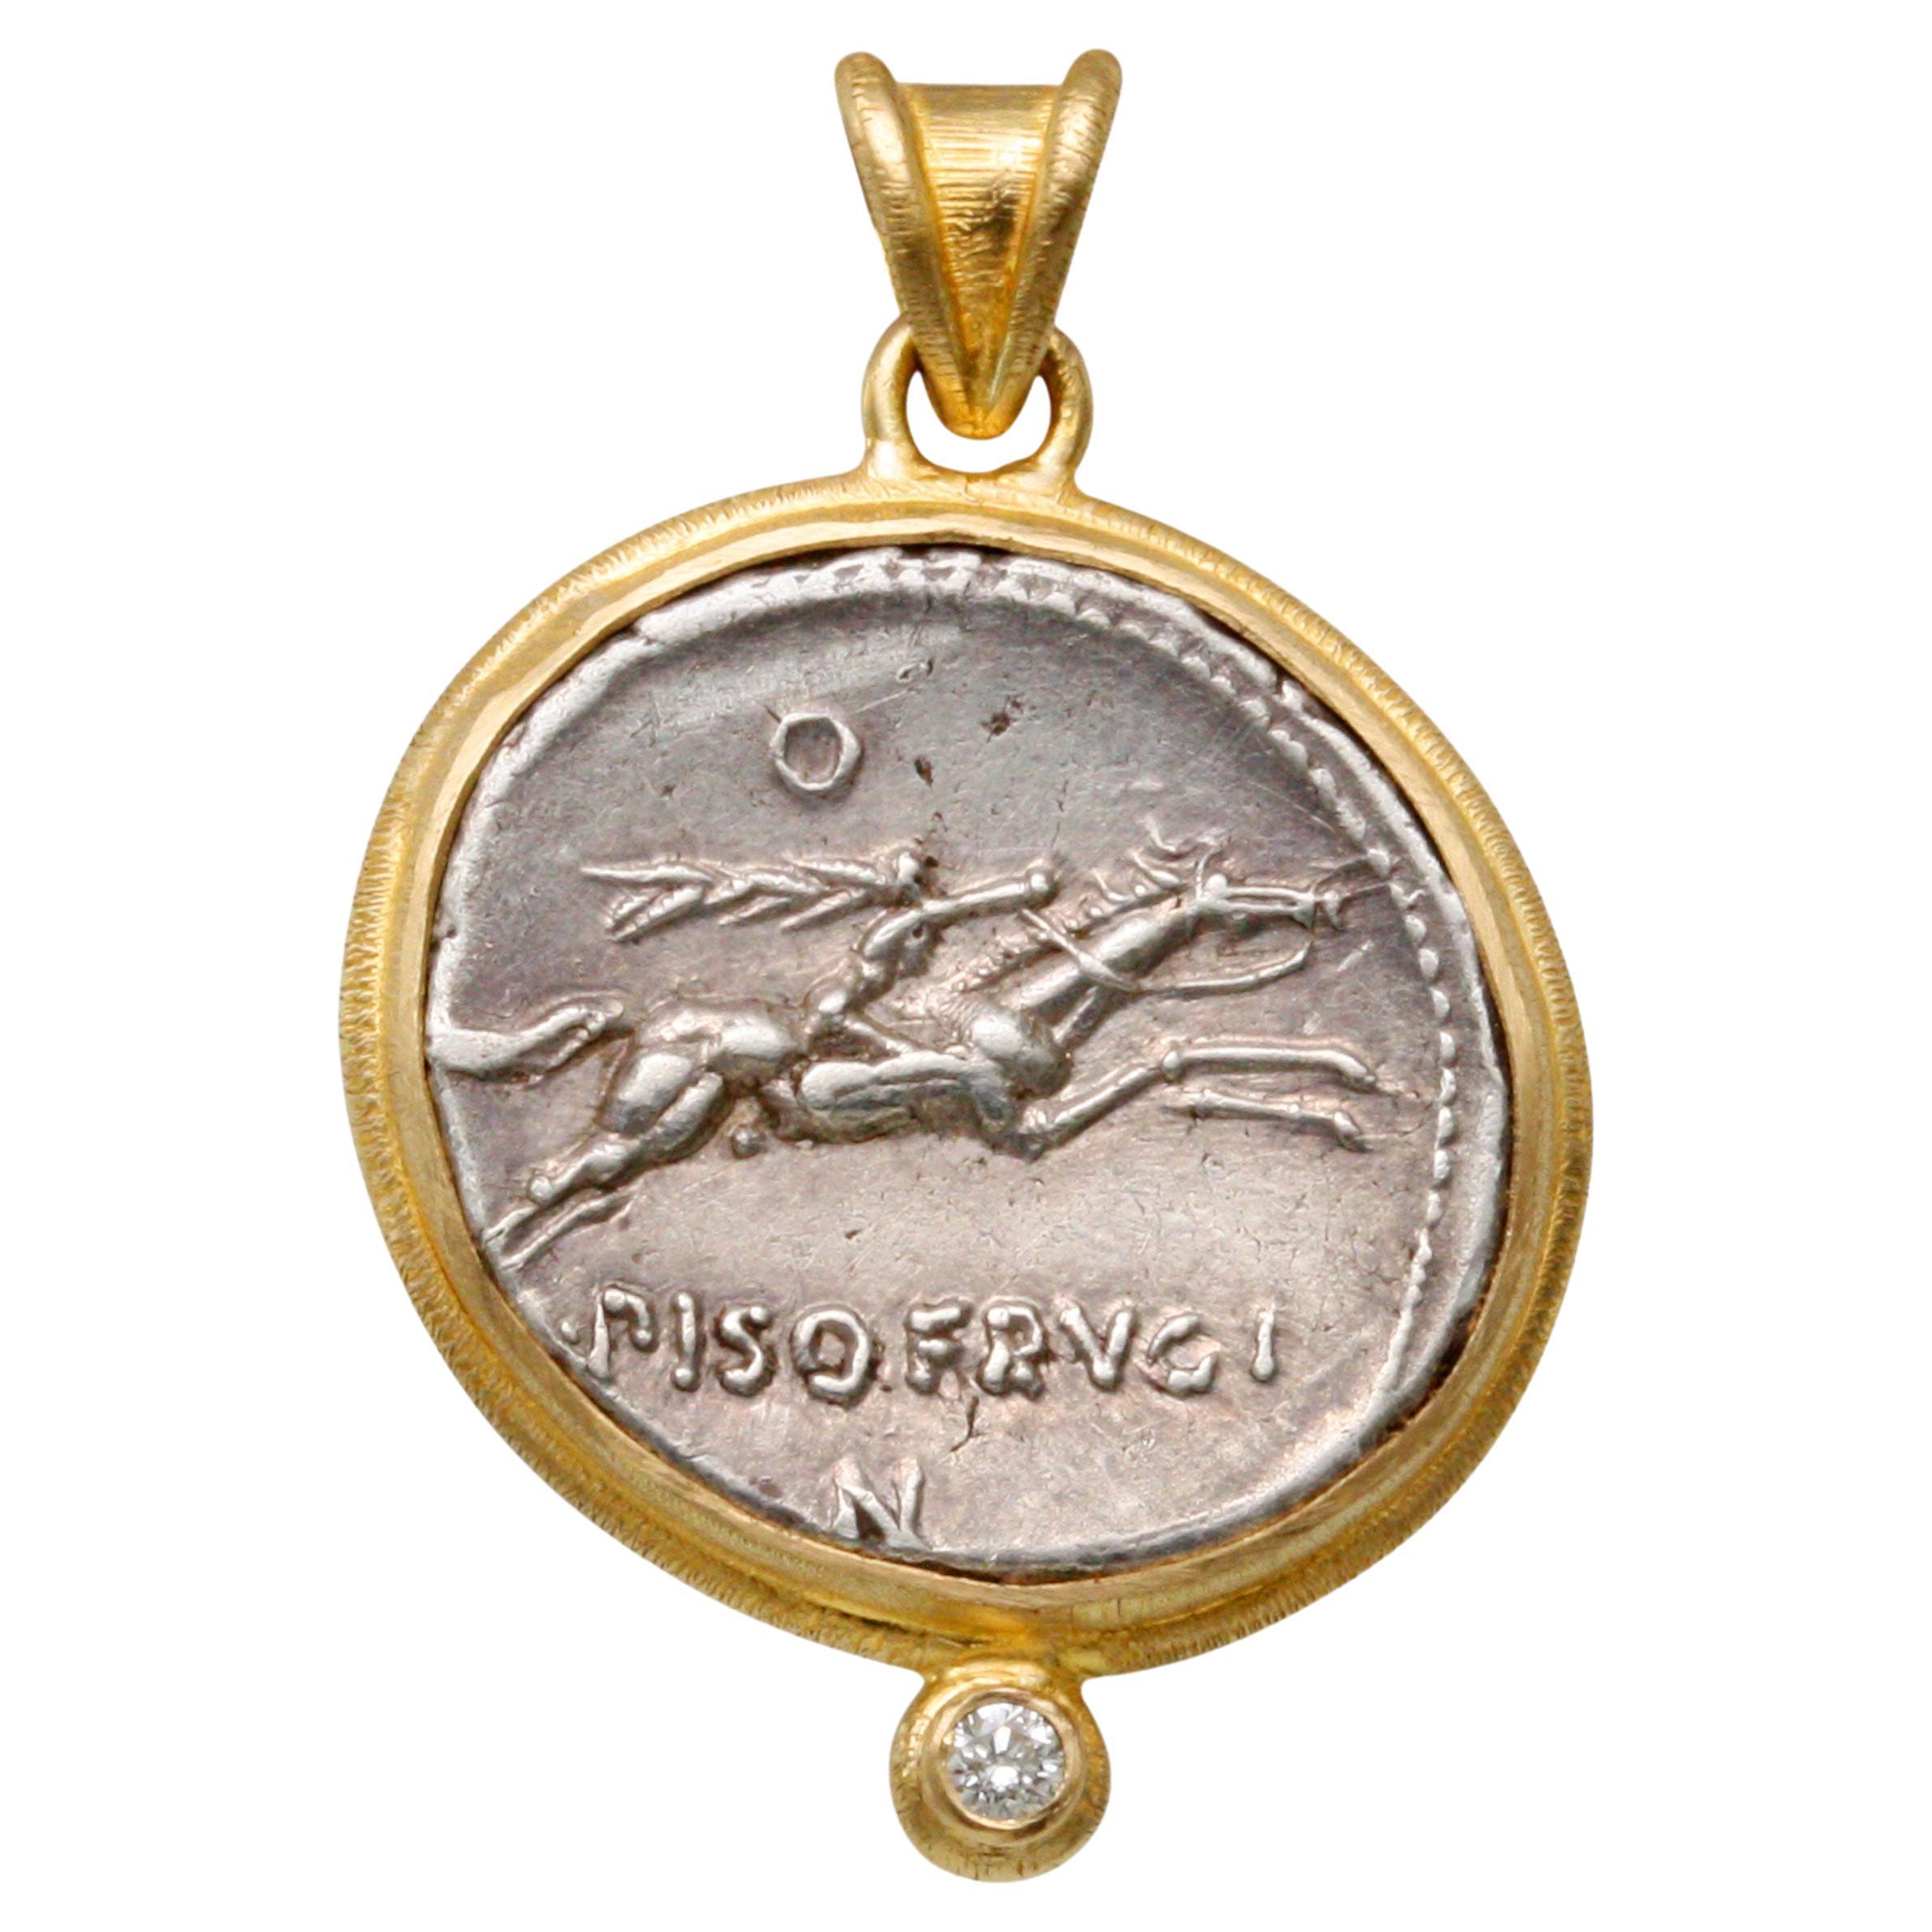 Antike römische Pferde- und Reitermünze aus dem ersten Jahrhundert v. Chr., Diamant-Anhänger aus 18 Karat Gold